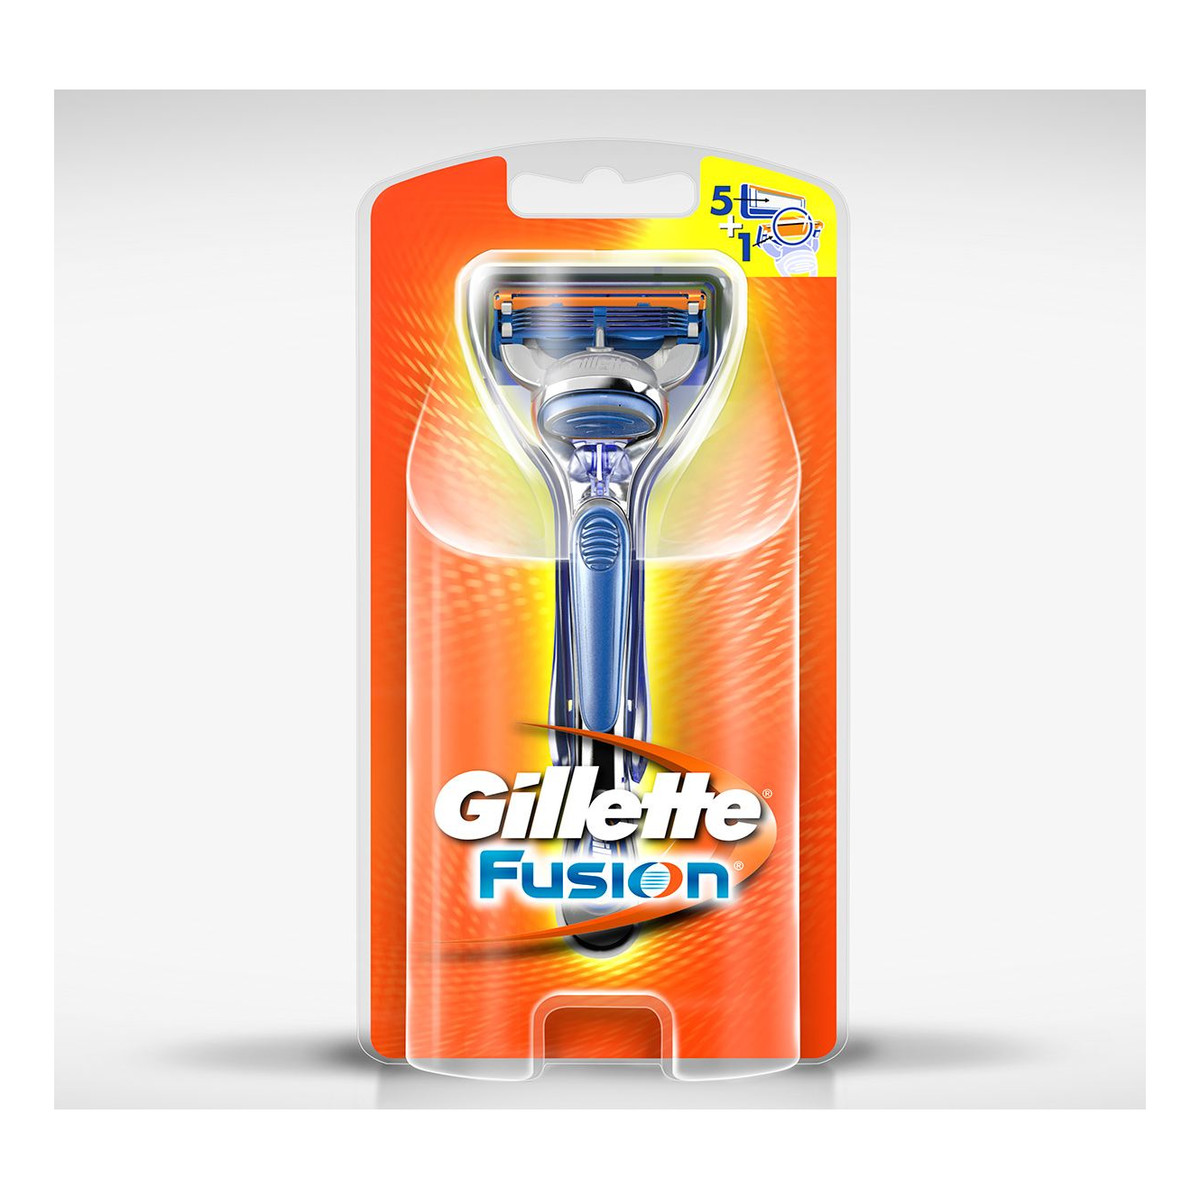 Gillette Fusion maszynka do golenia z 3 wymiennymi ostrzami